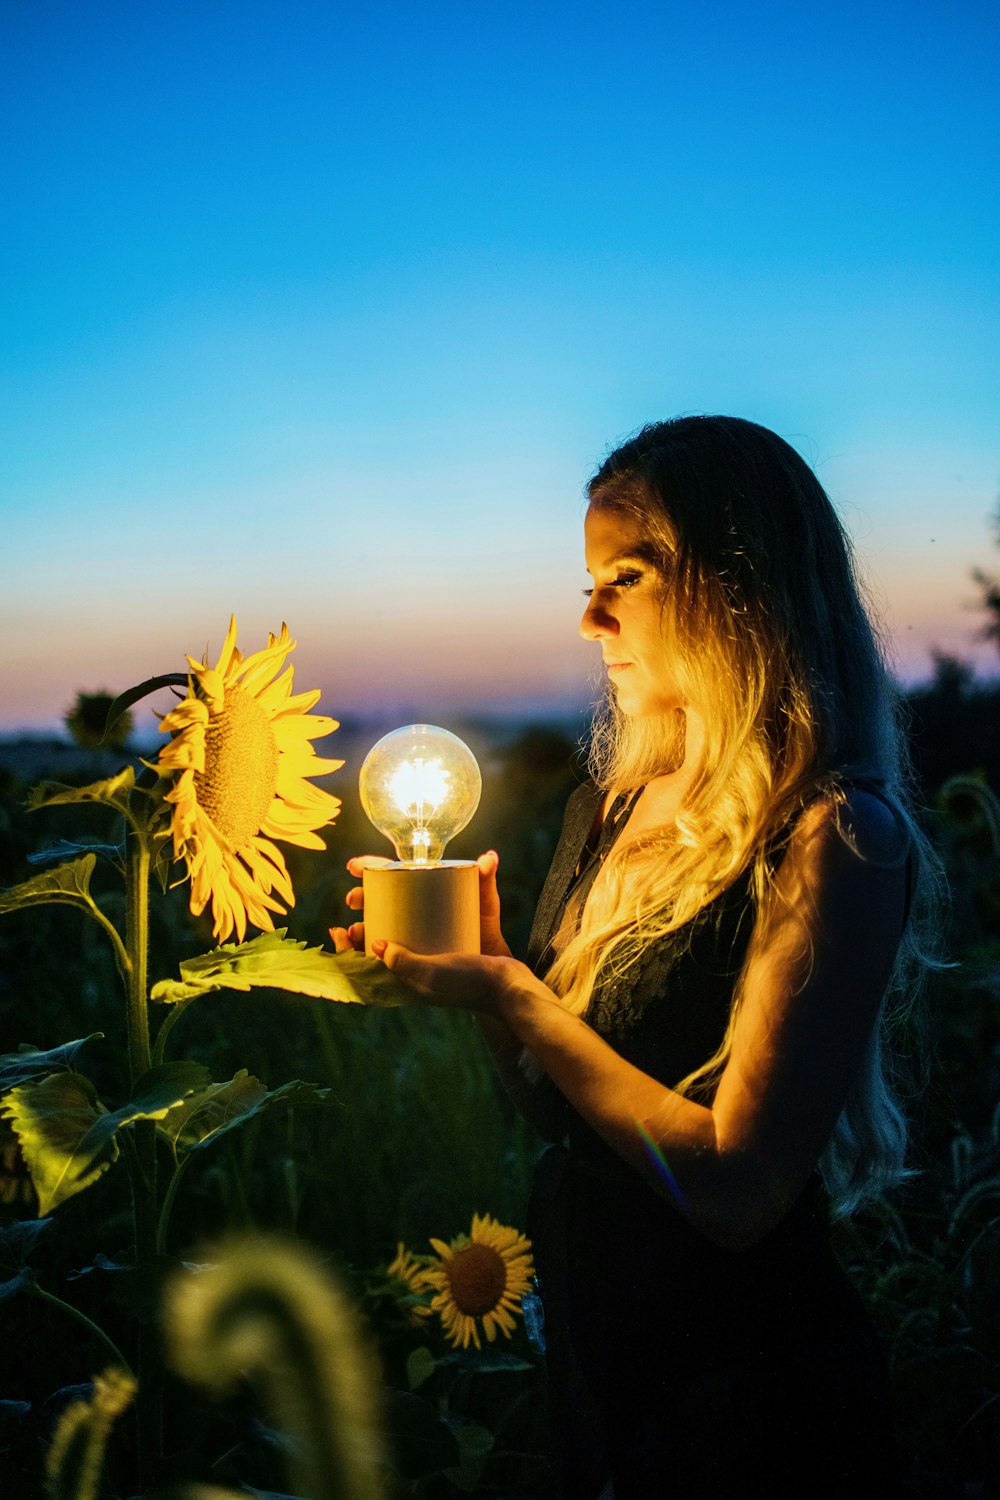 Frau mit Glühbirne in der Nähe von Sonnenblume, aufgenommen bei Sonnenuntergang